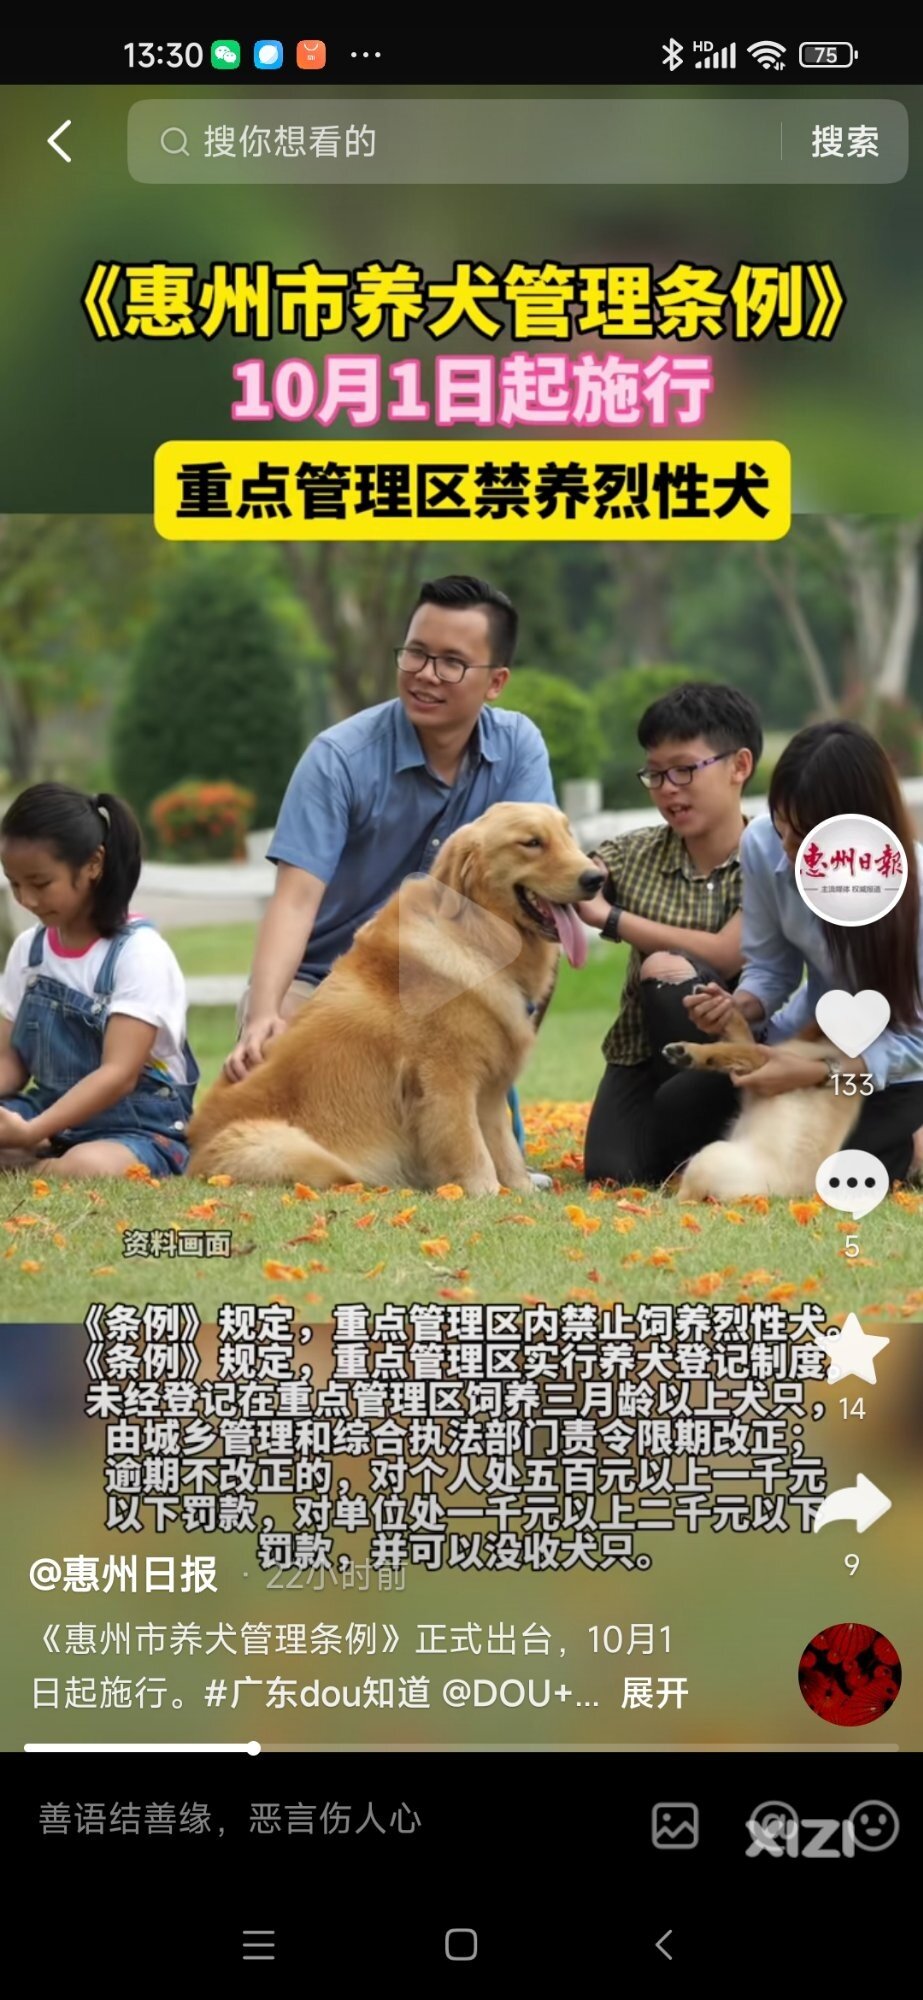 太好了，惠州养犬管理条例10月1日施行